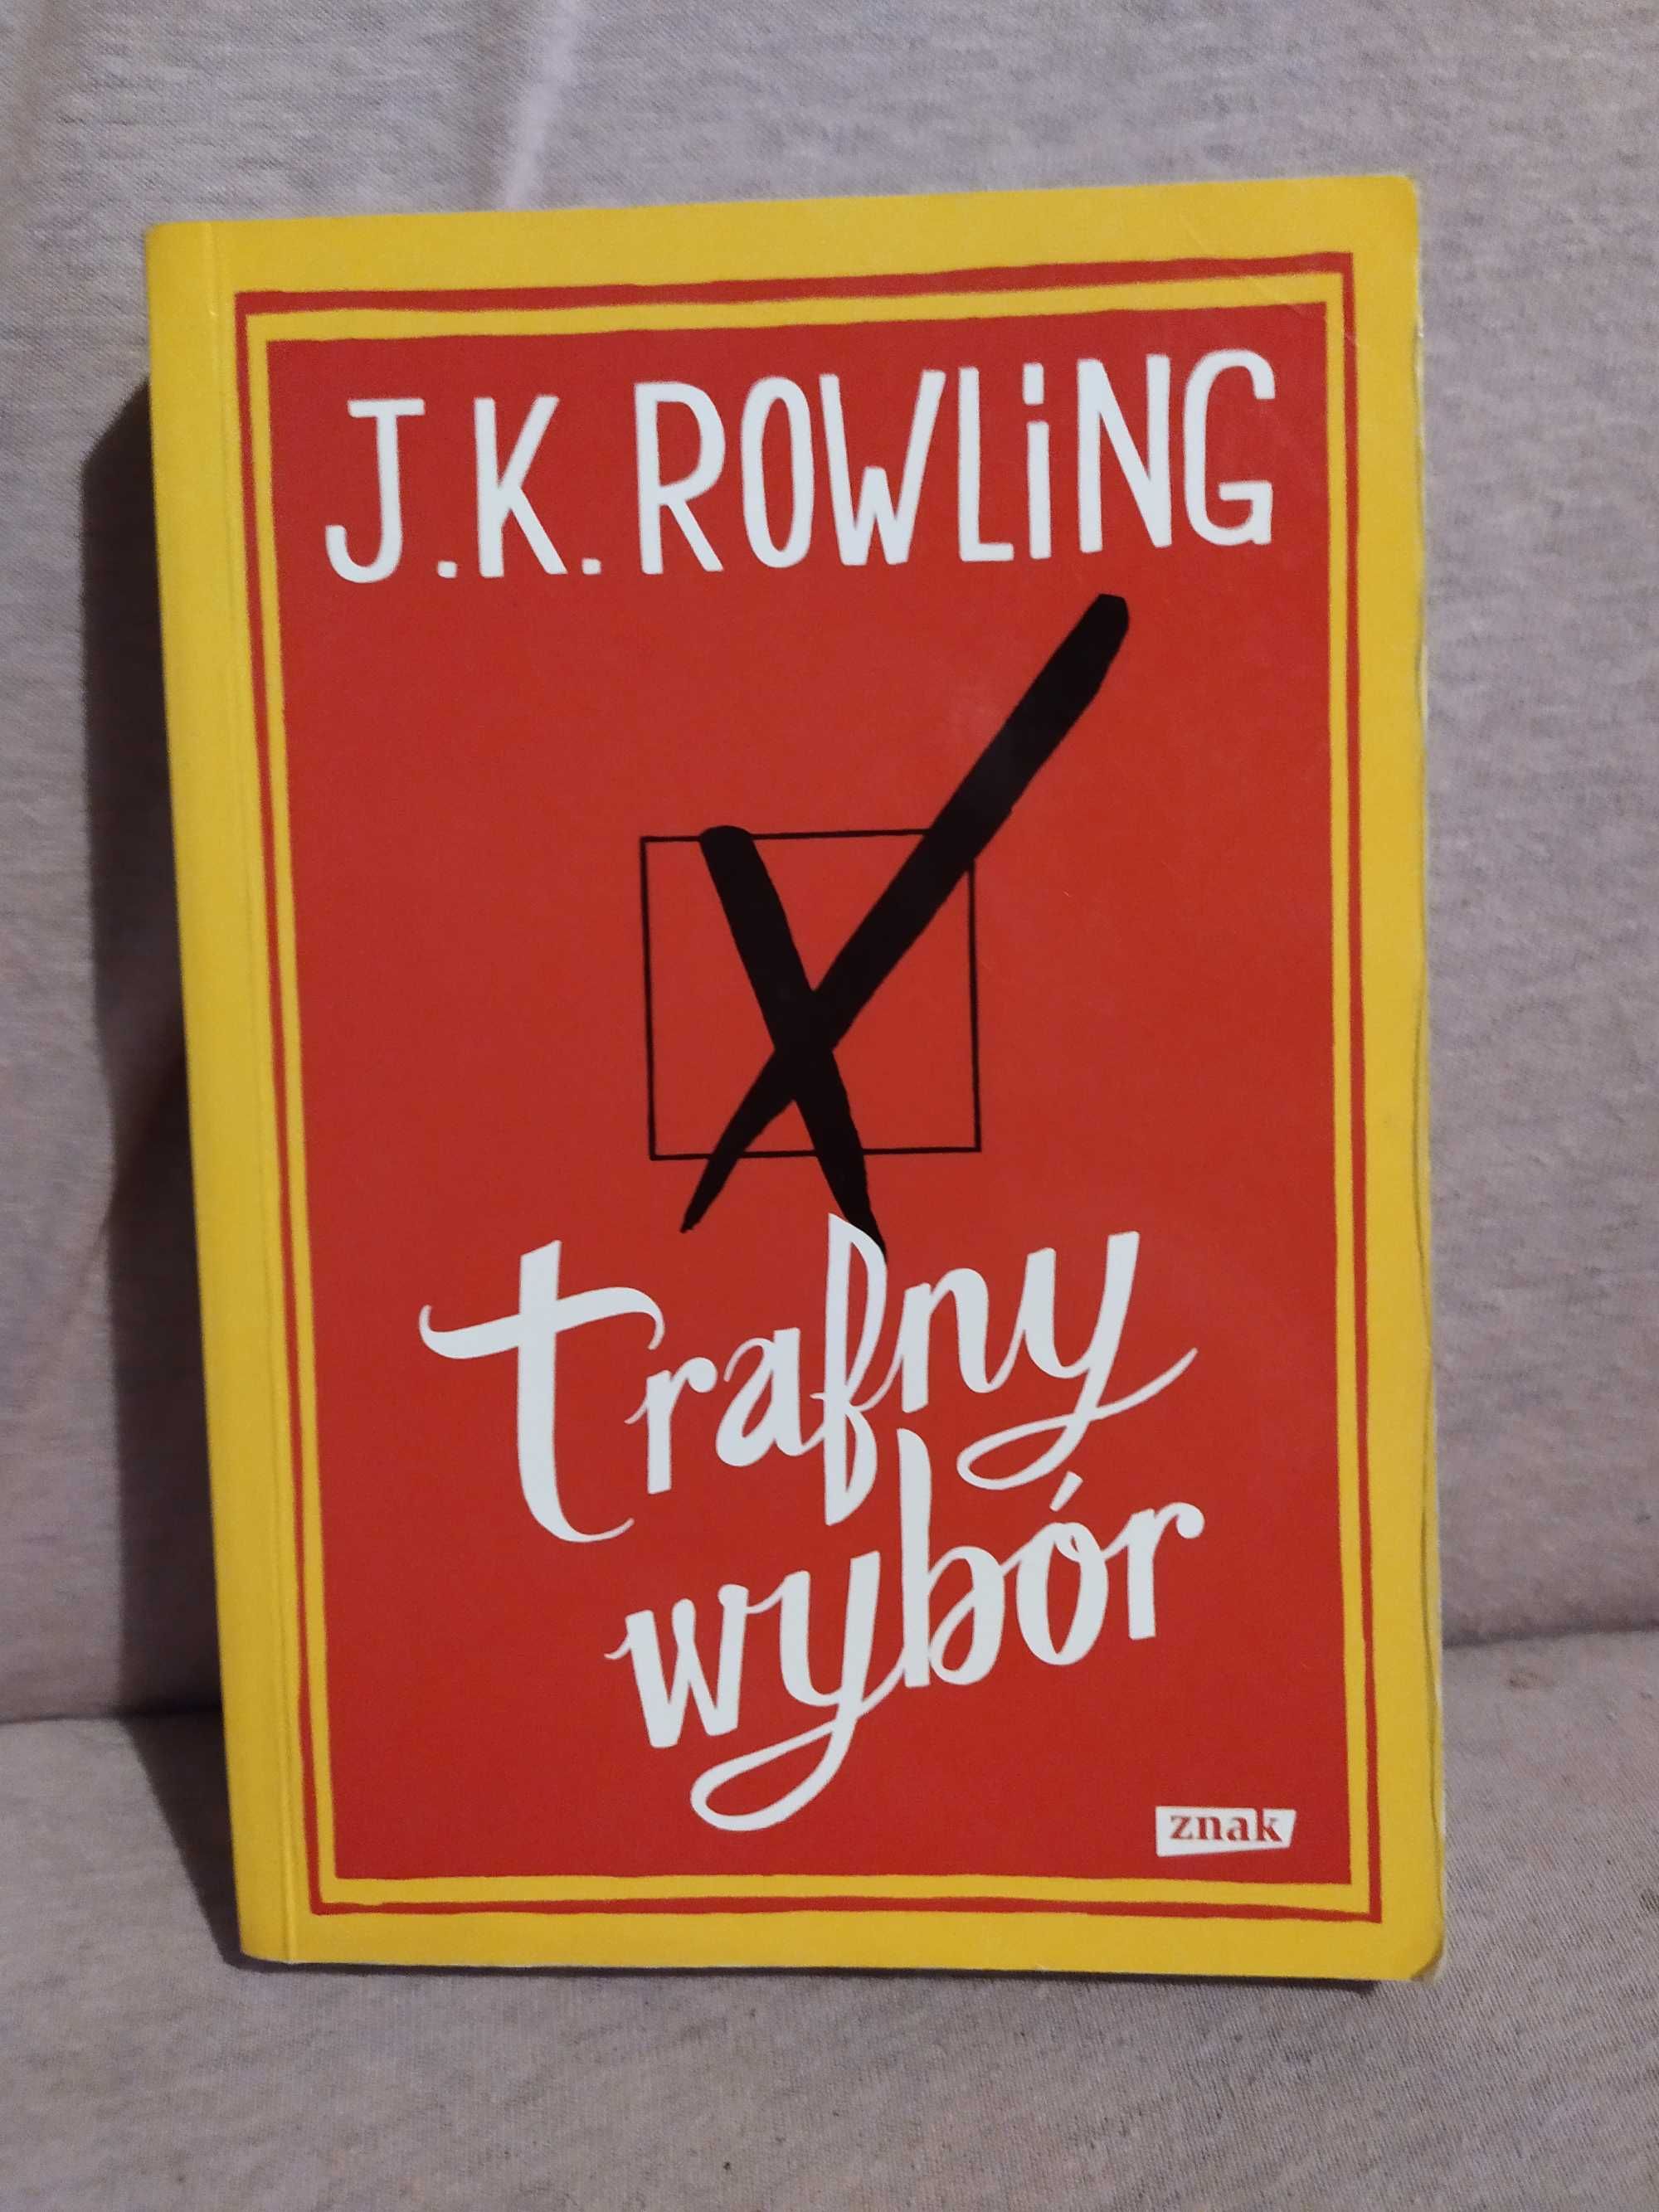 Trafny wybór - J. K. Rowling